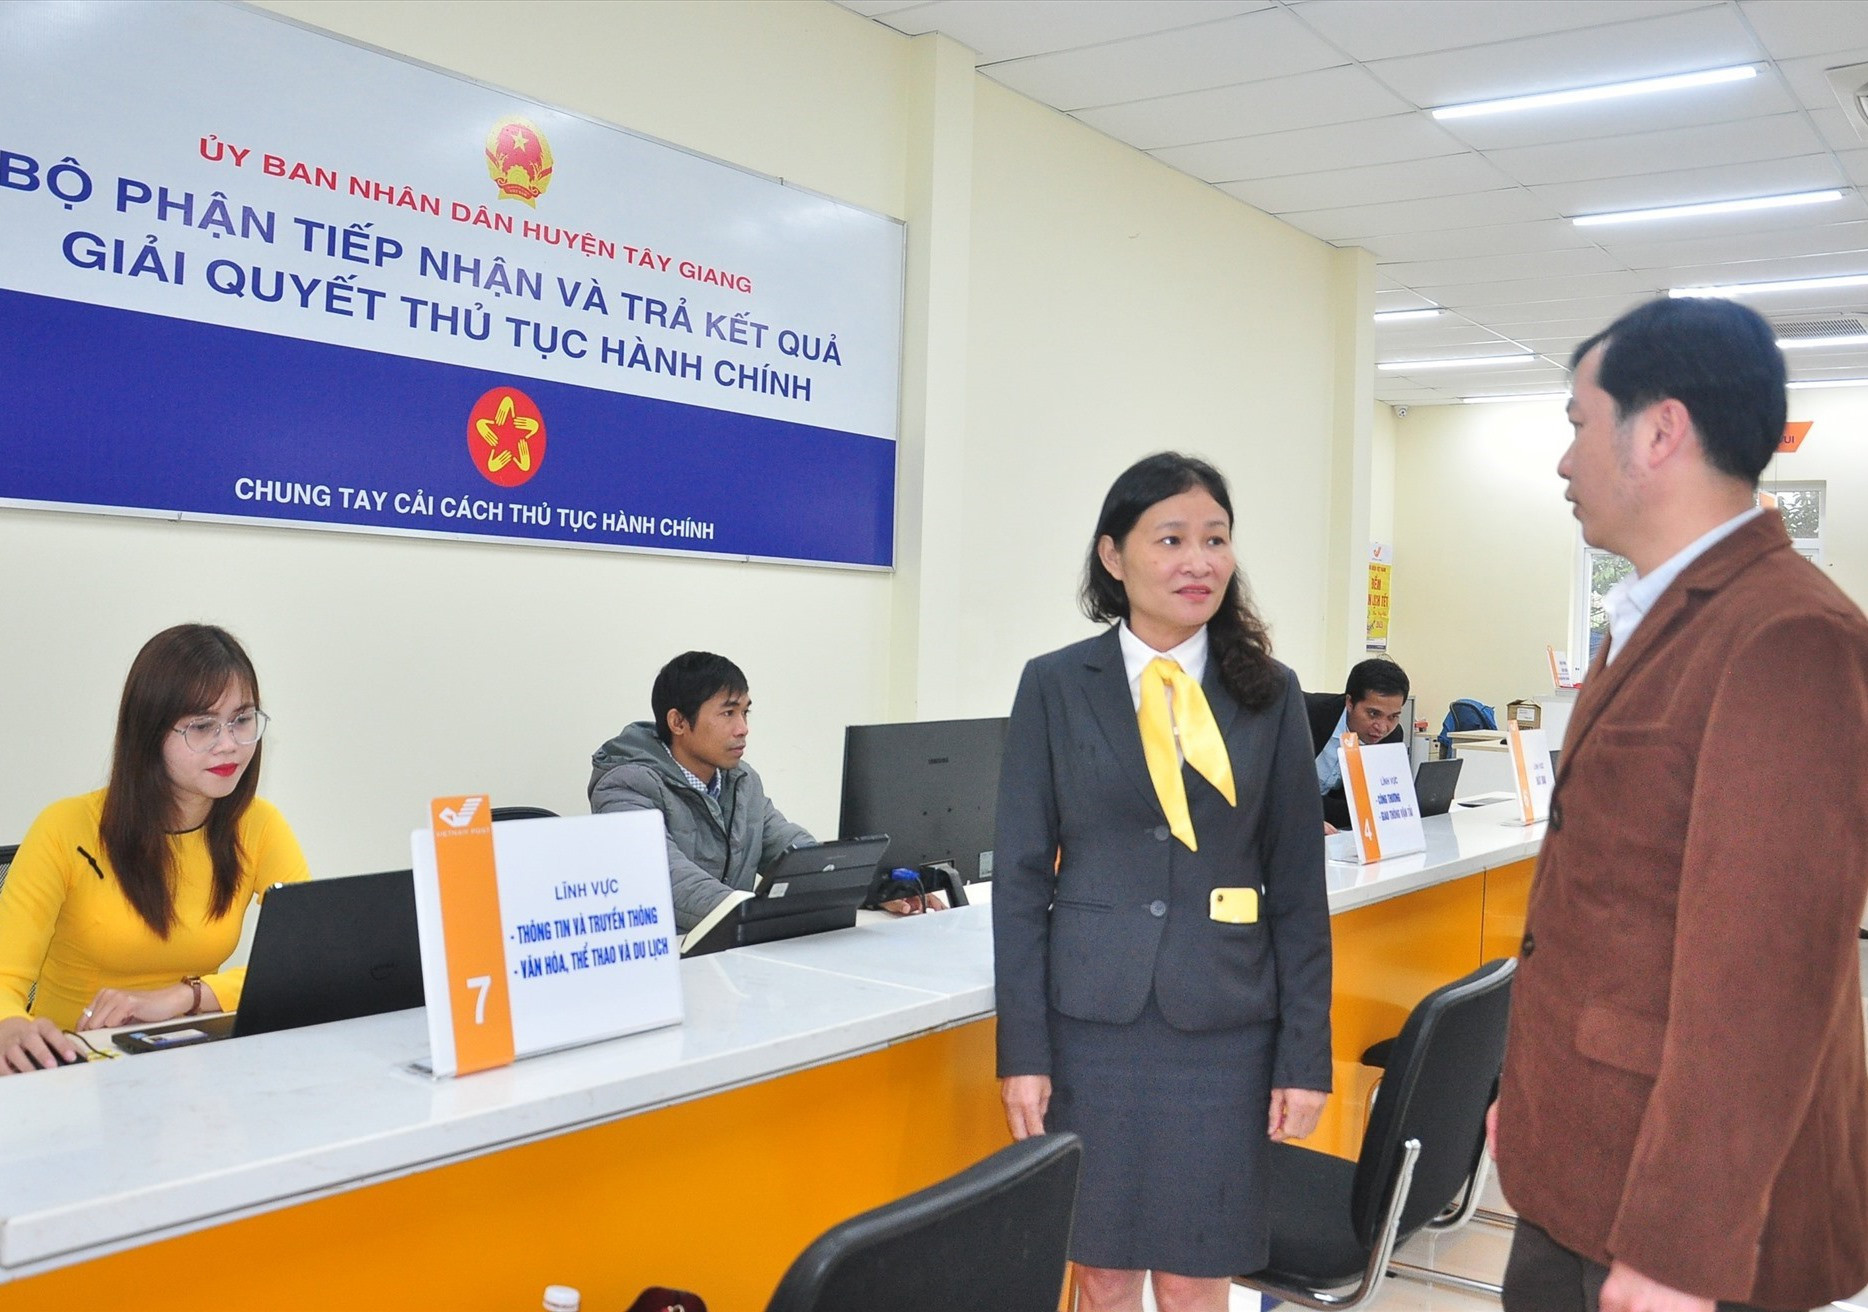 Liên quan đến chủ trương chuyển trụ sở bộ phận một cửa các cấp qua trụ sở bưu điện, đến nay, huyện Tây Giang là đơn vị duy nhất thực hiện. Ảnh: V.A